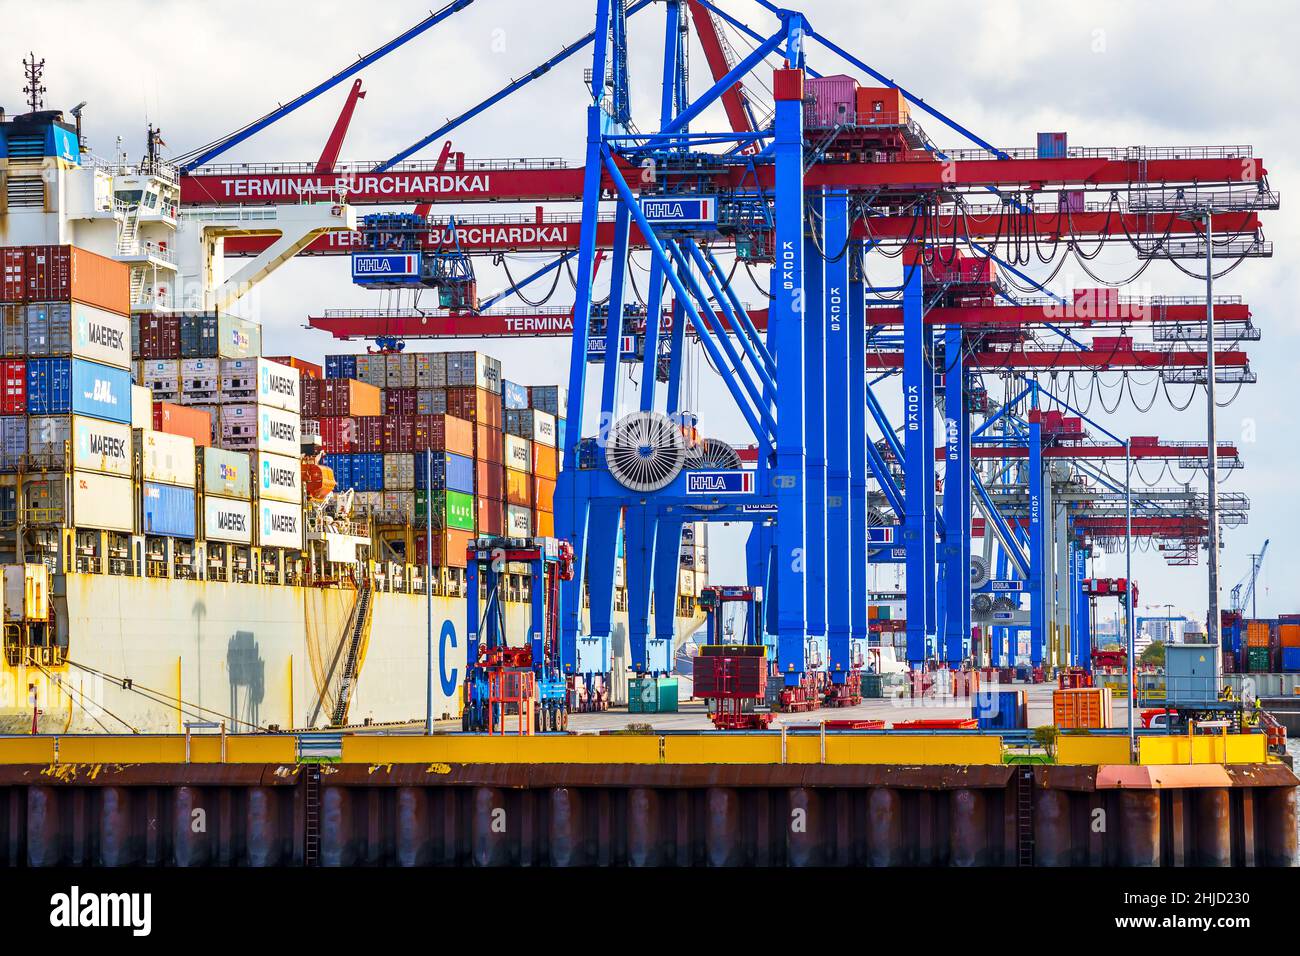 Ein Containerschiff wird tagsüber im Hamburger Hafen beladen; mit blau-rote Containerbrücken werden die Container an die richtige position bugsiert Banque D'Images